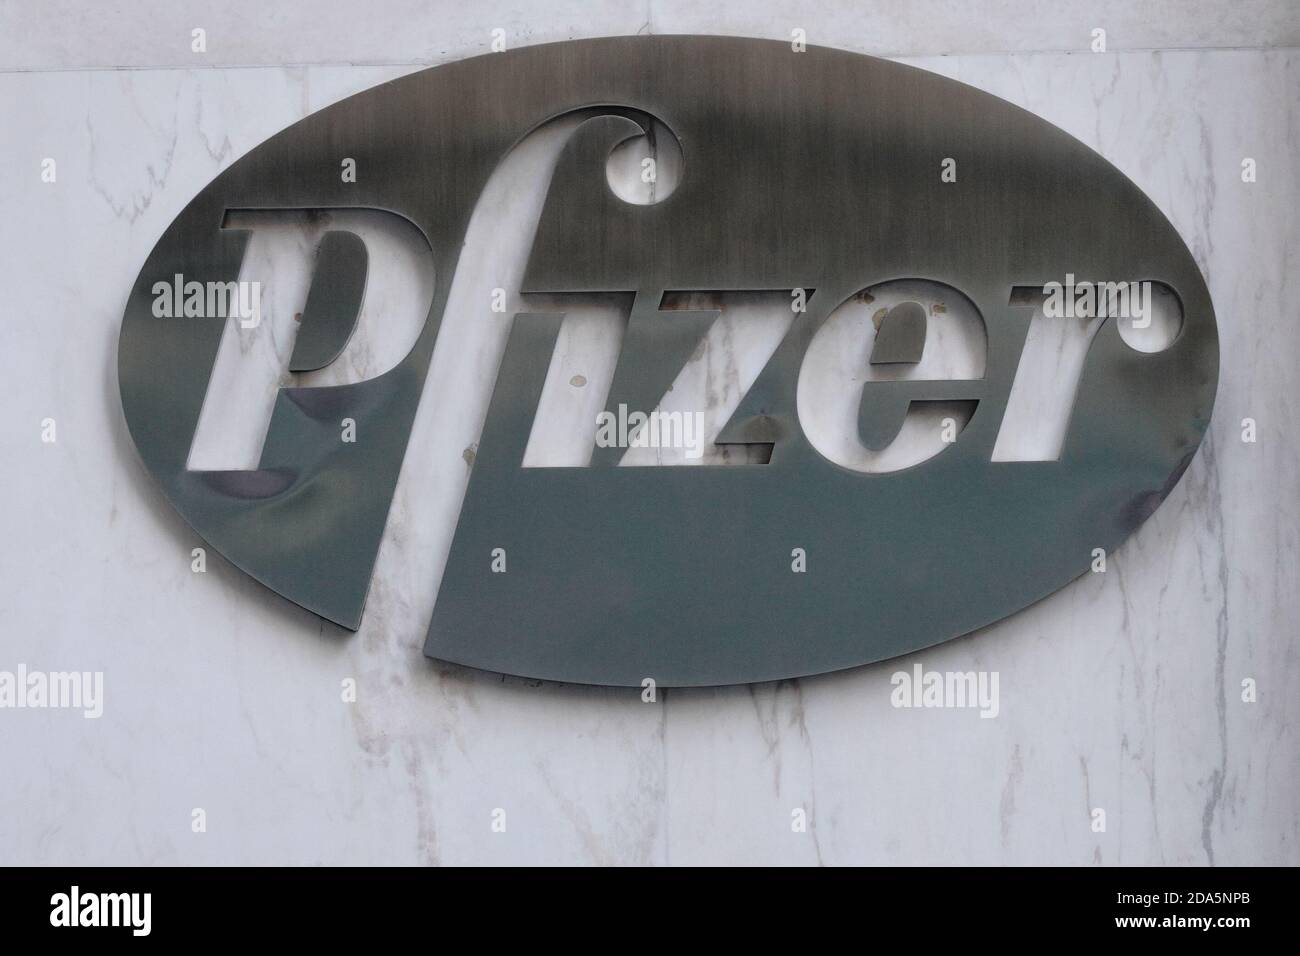 Ein Pfizer Logo Das Vor Dem Hauptsitz In New York City Zu Sehen Ist Das Pharmaunternehmen Pfizer Gab Erste Positive Ergebnisse Seiner Impfstoffstudie Covid 19 Bekannt Und Hat Sich Als 90 Wirksam Bei Der Verhinderung